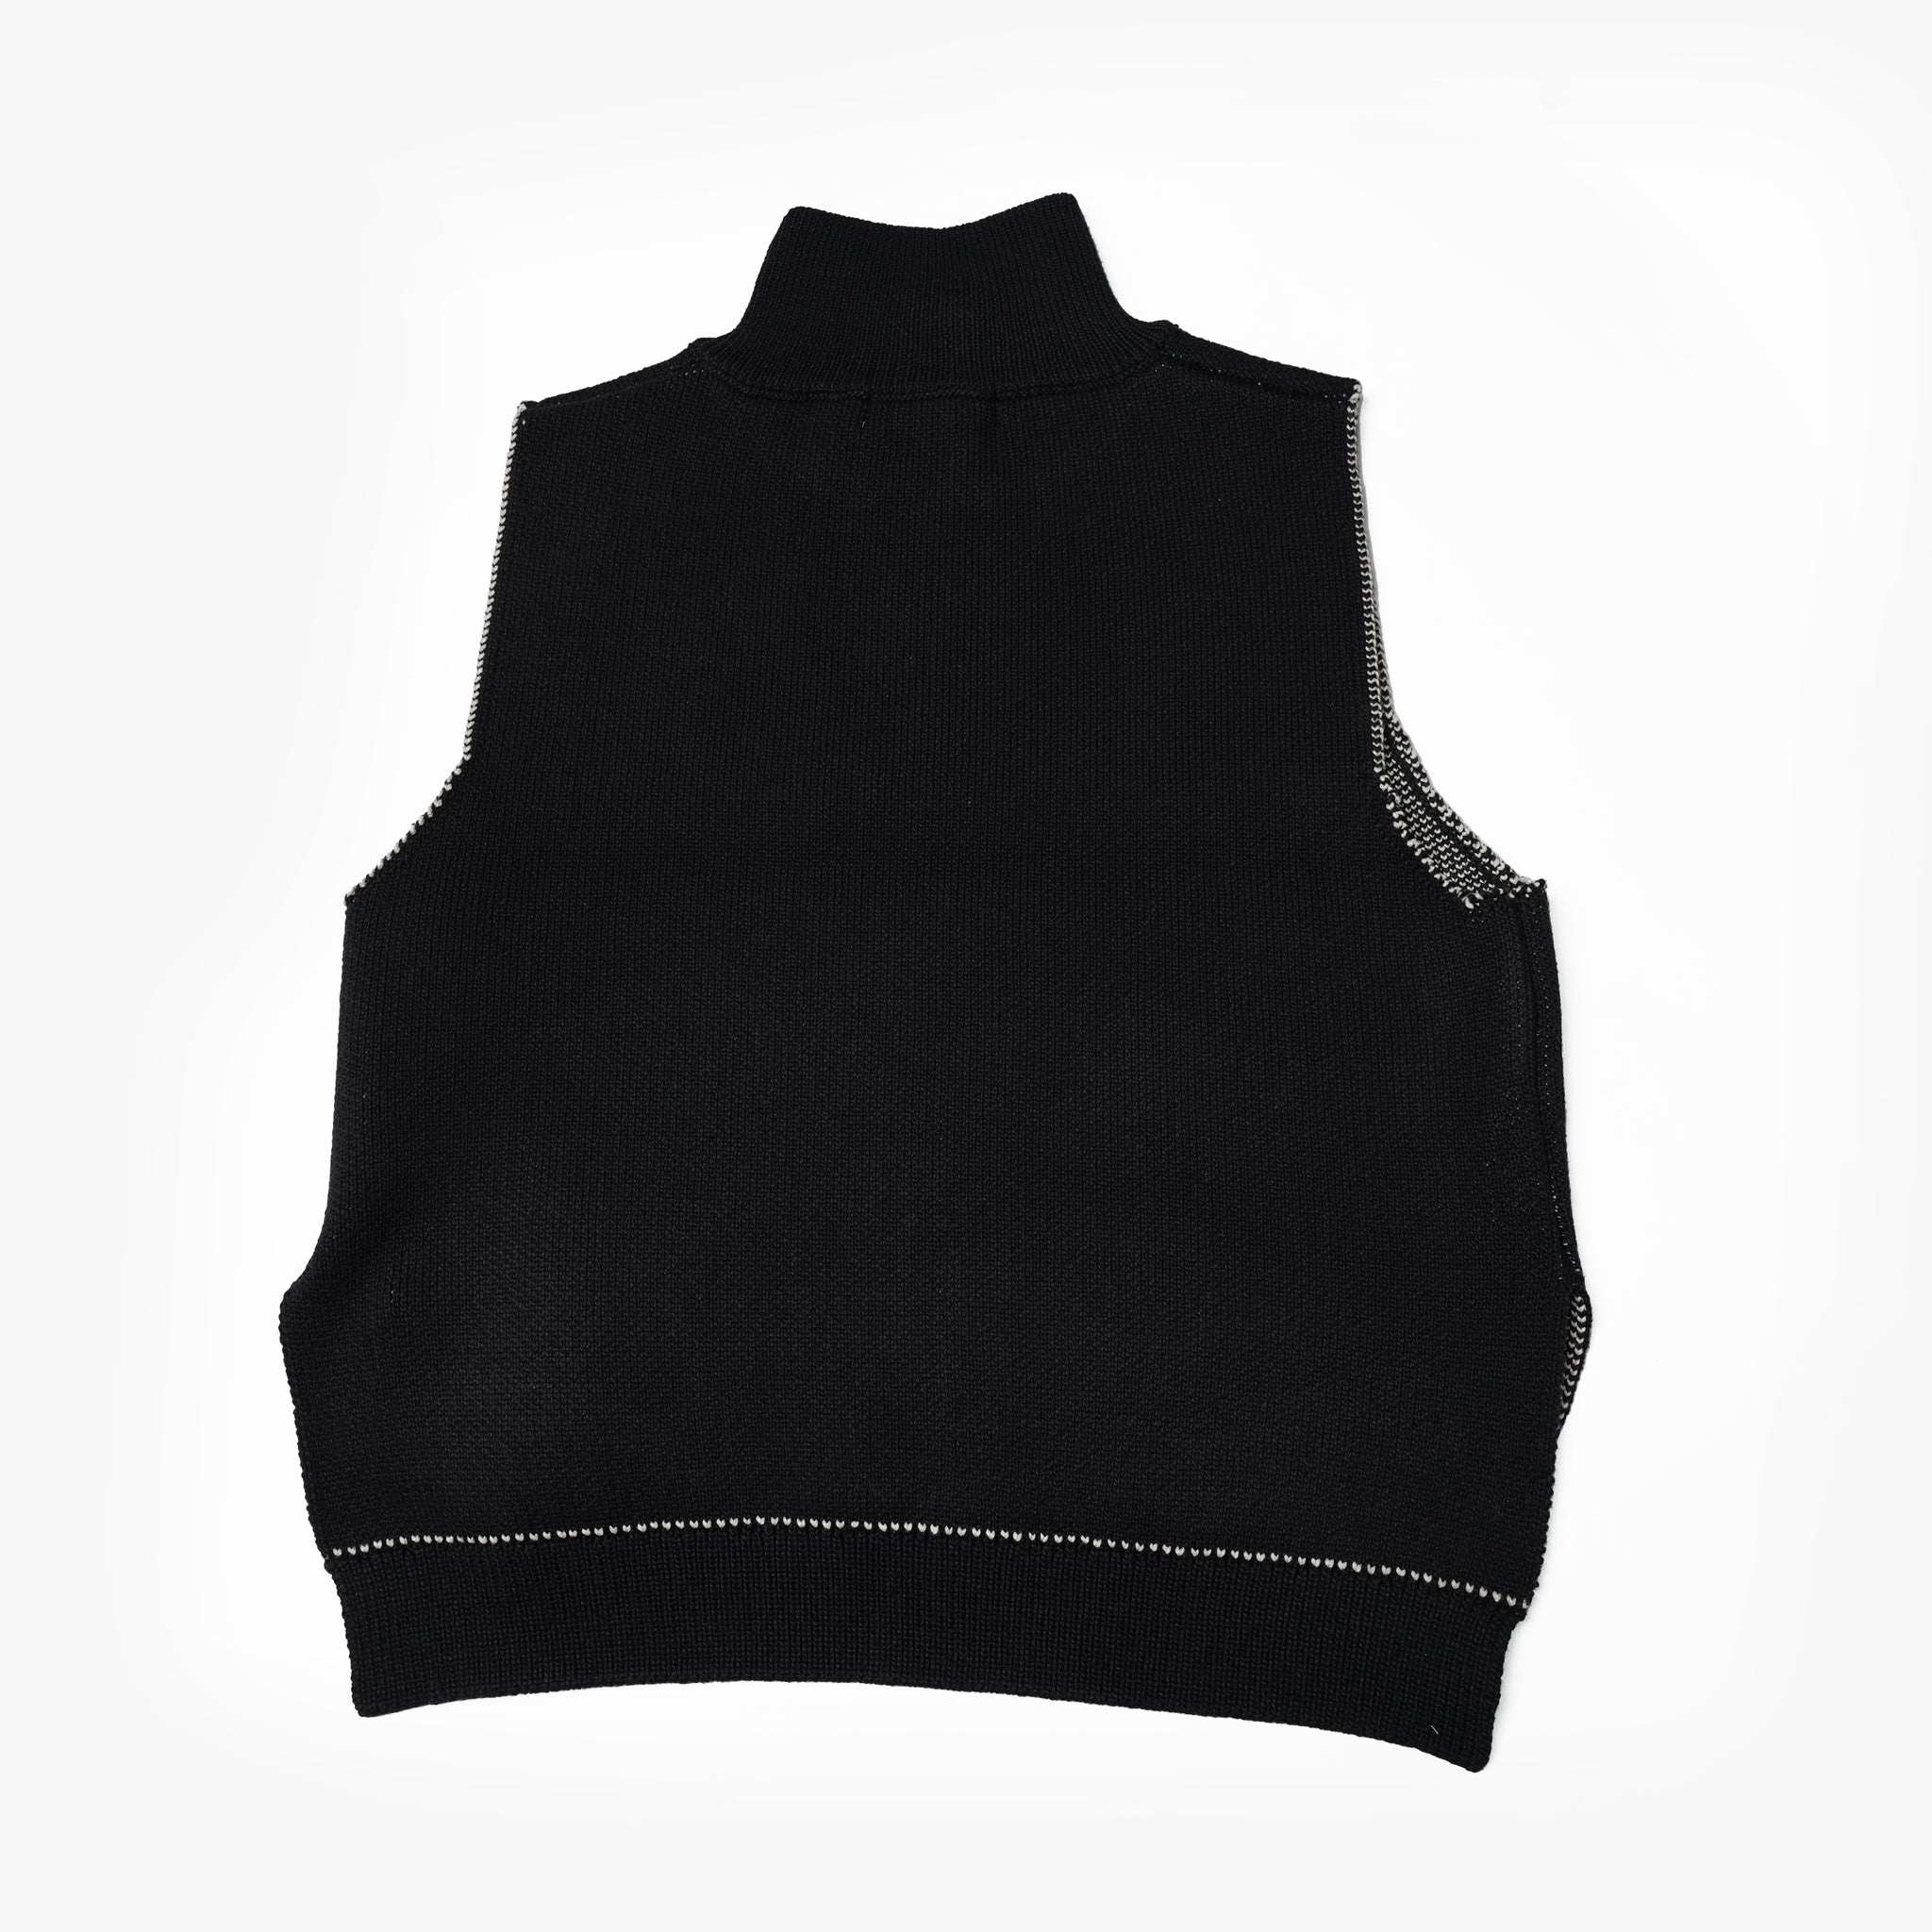 Name:Fringe Vest Sweater | Color:Black【AMBERGLEAM_アンバーグリーム】| No:1108121213